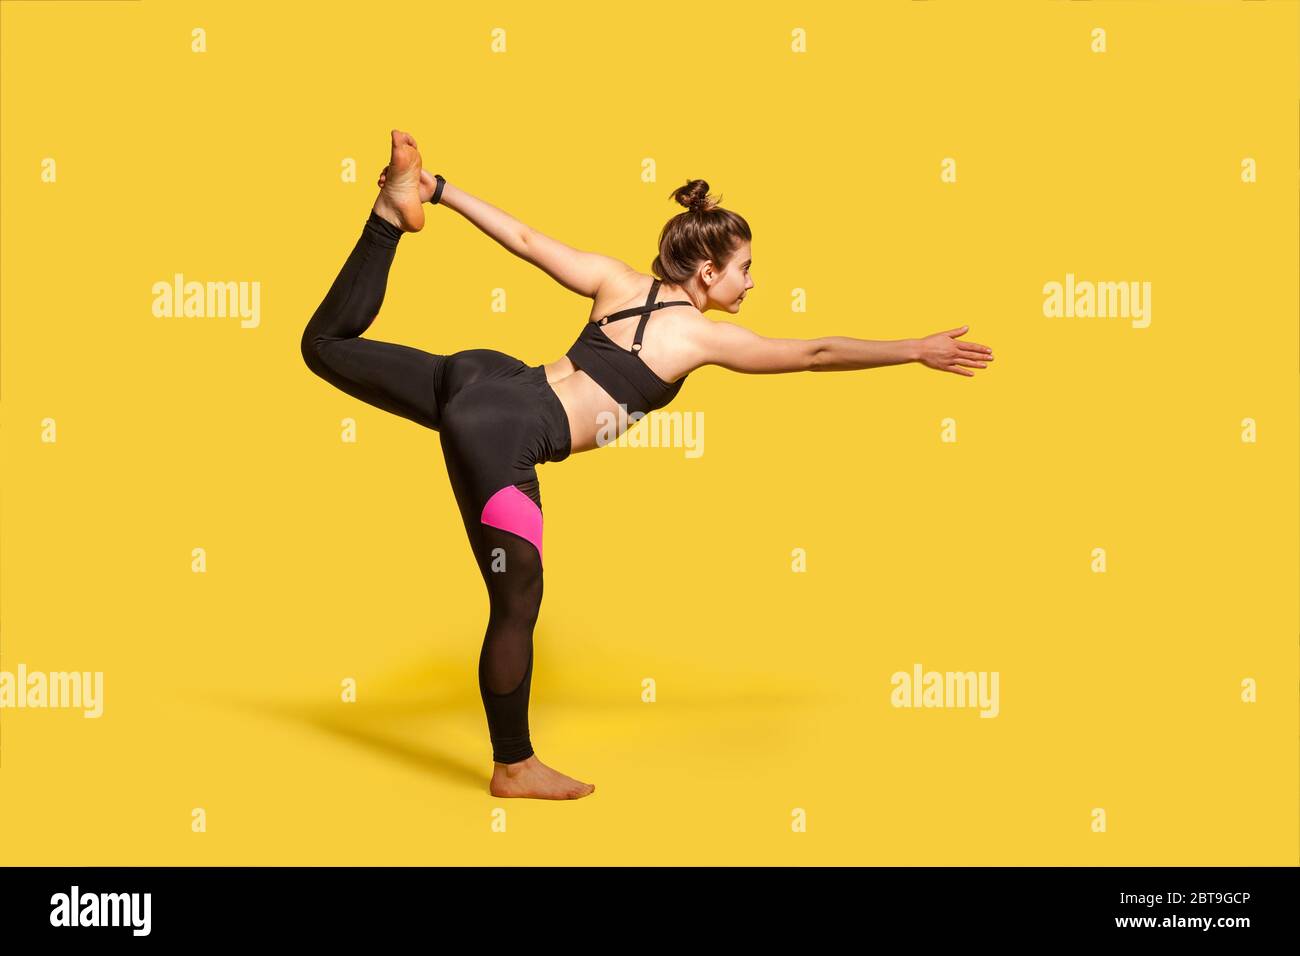 Posa ballerina. Donna sottile con capelli bun in stretto sport che pratica yoga, facendo Natarajasana esercizio su una gamba, allungando i muscoli e l'equilibrio. f Foto Stock